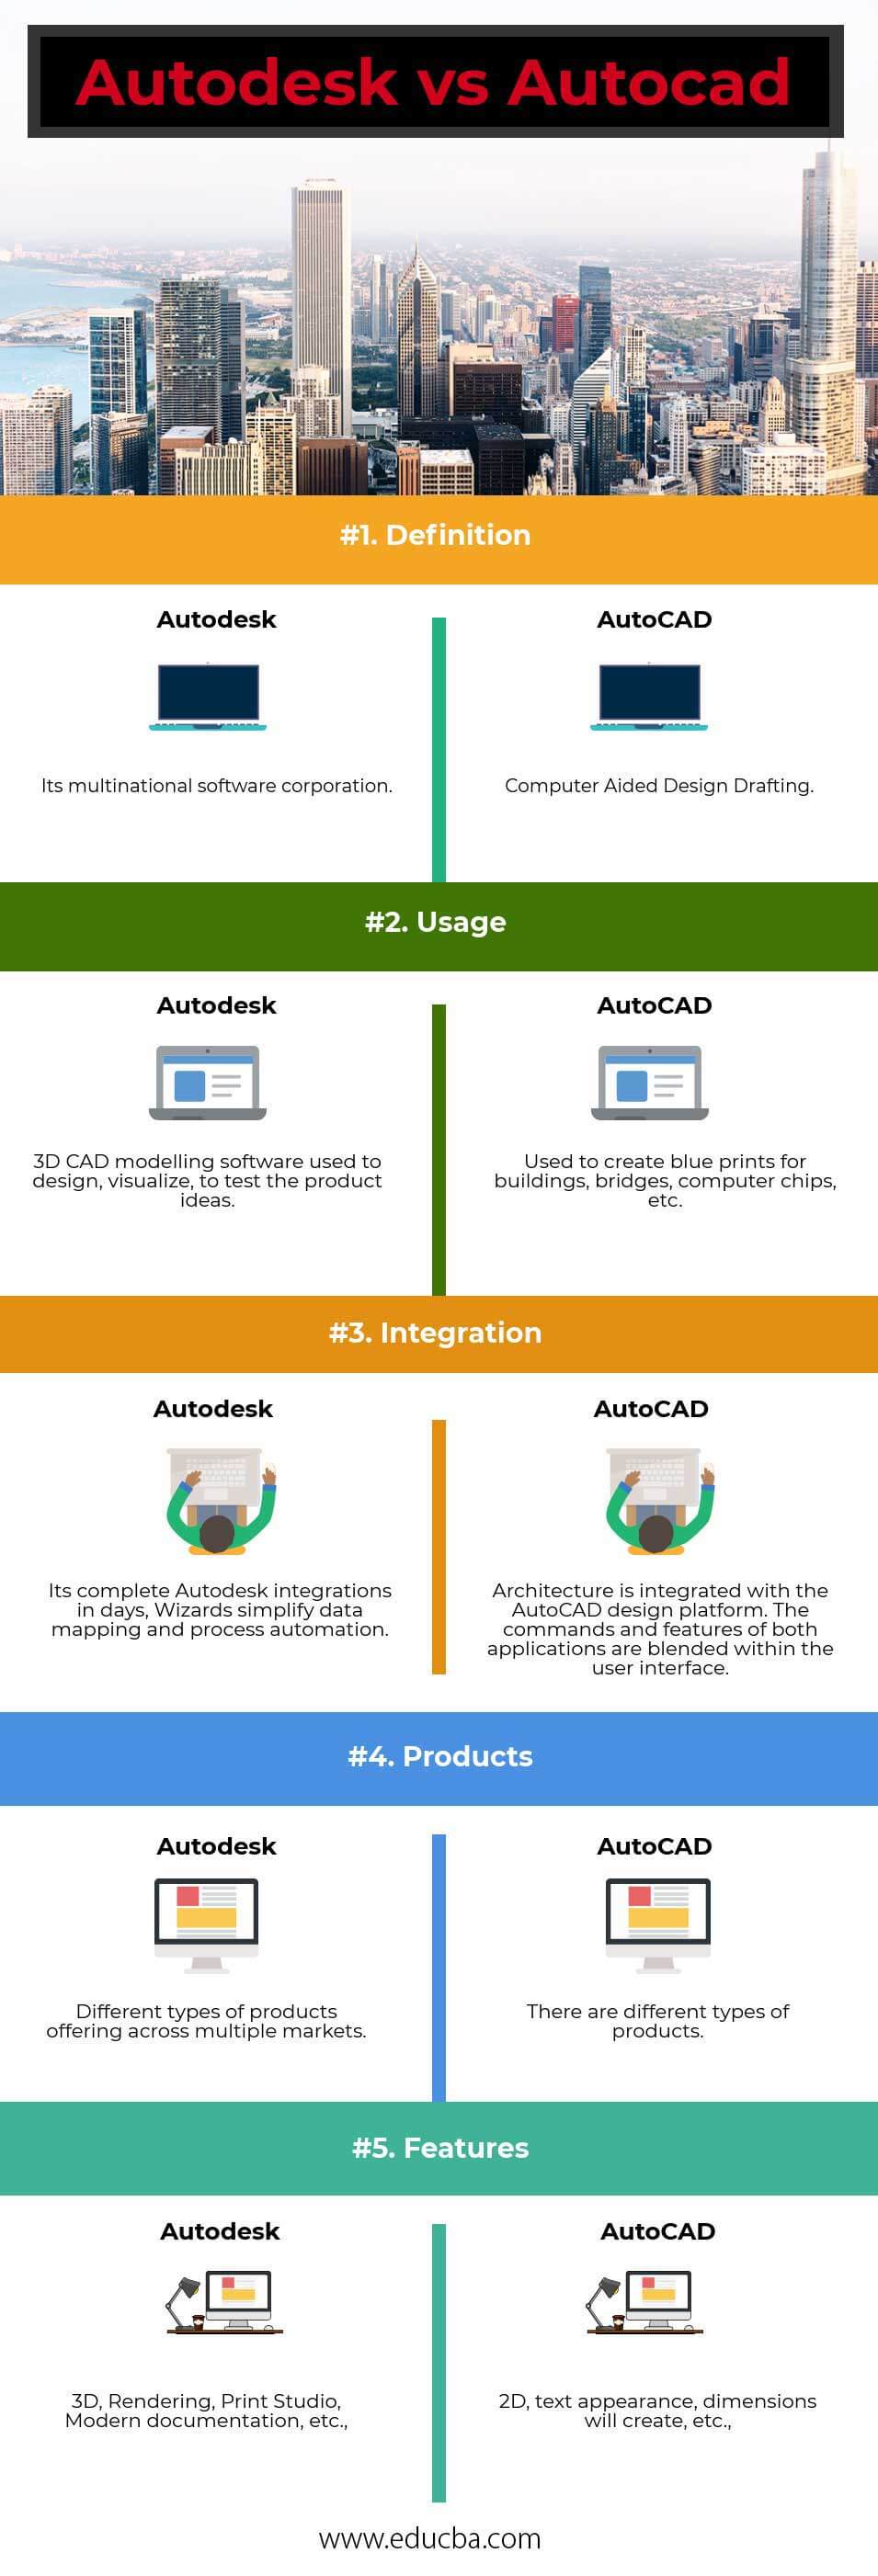 Autodesk-vs-Autocad